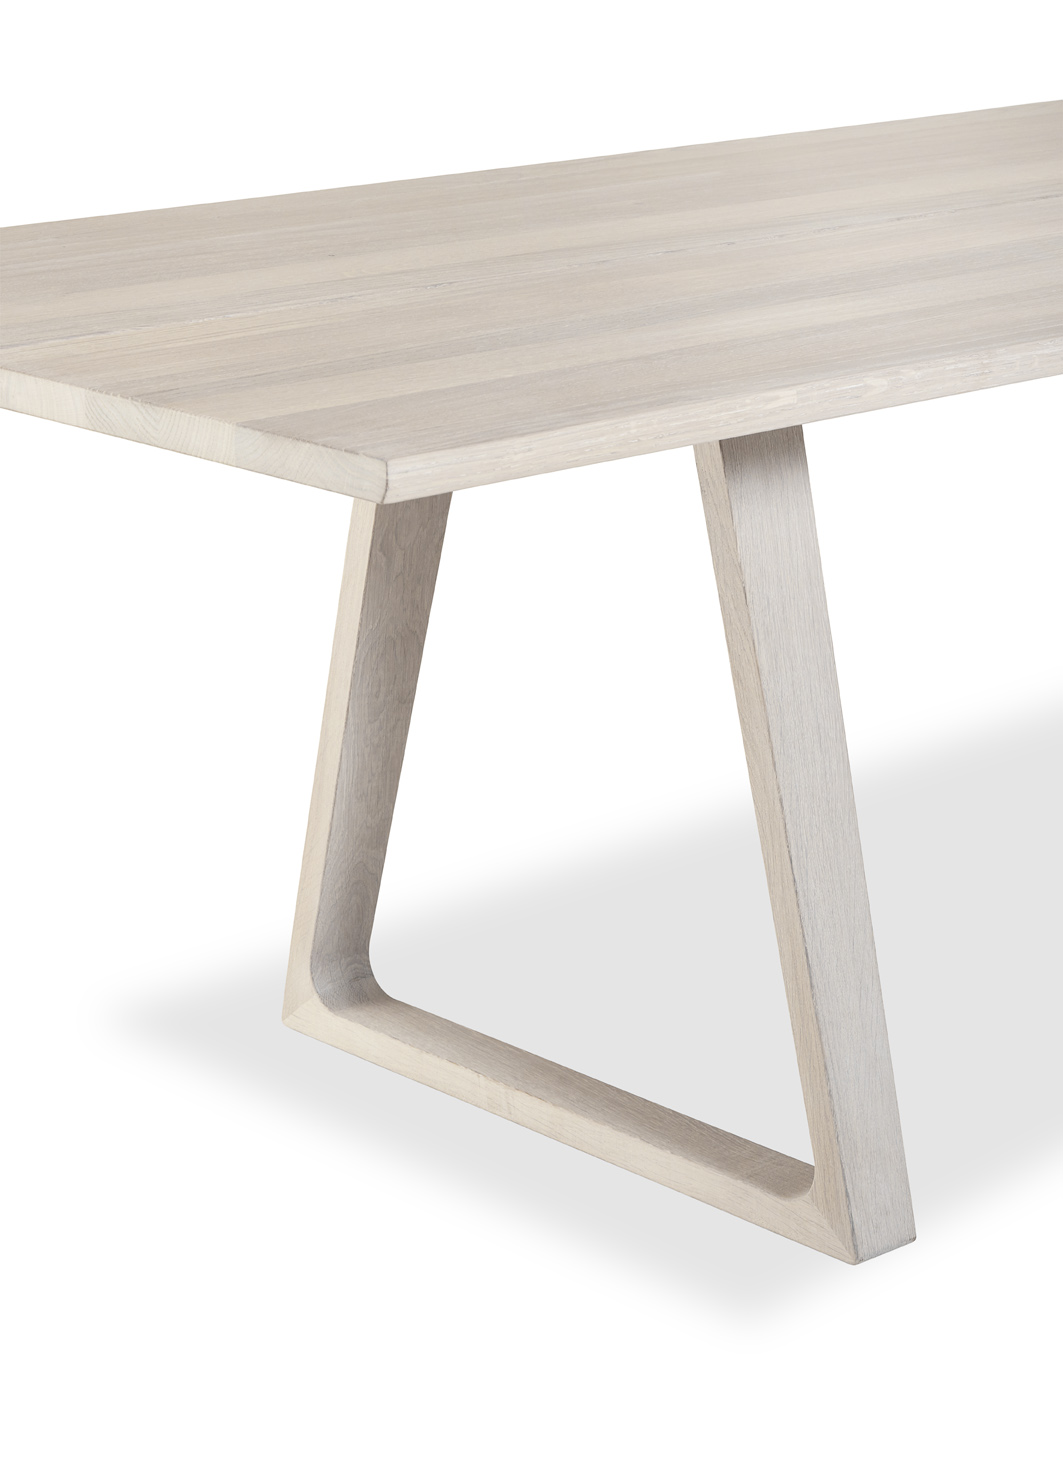 - Skovbys plankebord #106 består av to solide planker med plass til 8 – 10 personer, og plankene bæres av to trapesformede rammer som gir bordet et visuelt rolig, men også spenstig uttrykk, sier produsenten i en beskrivelse av bordet.